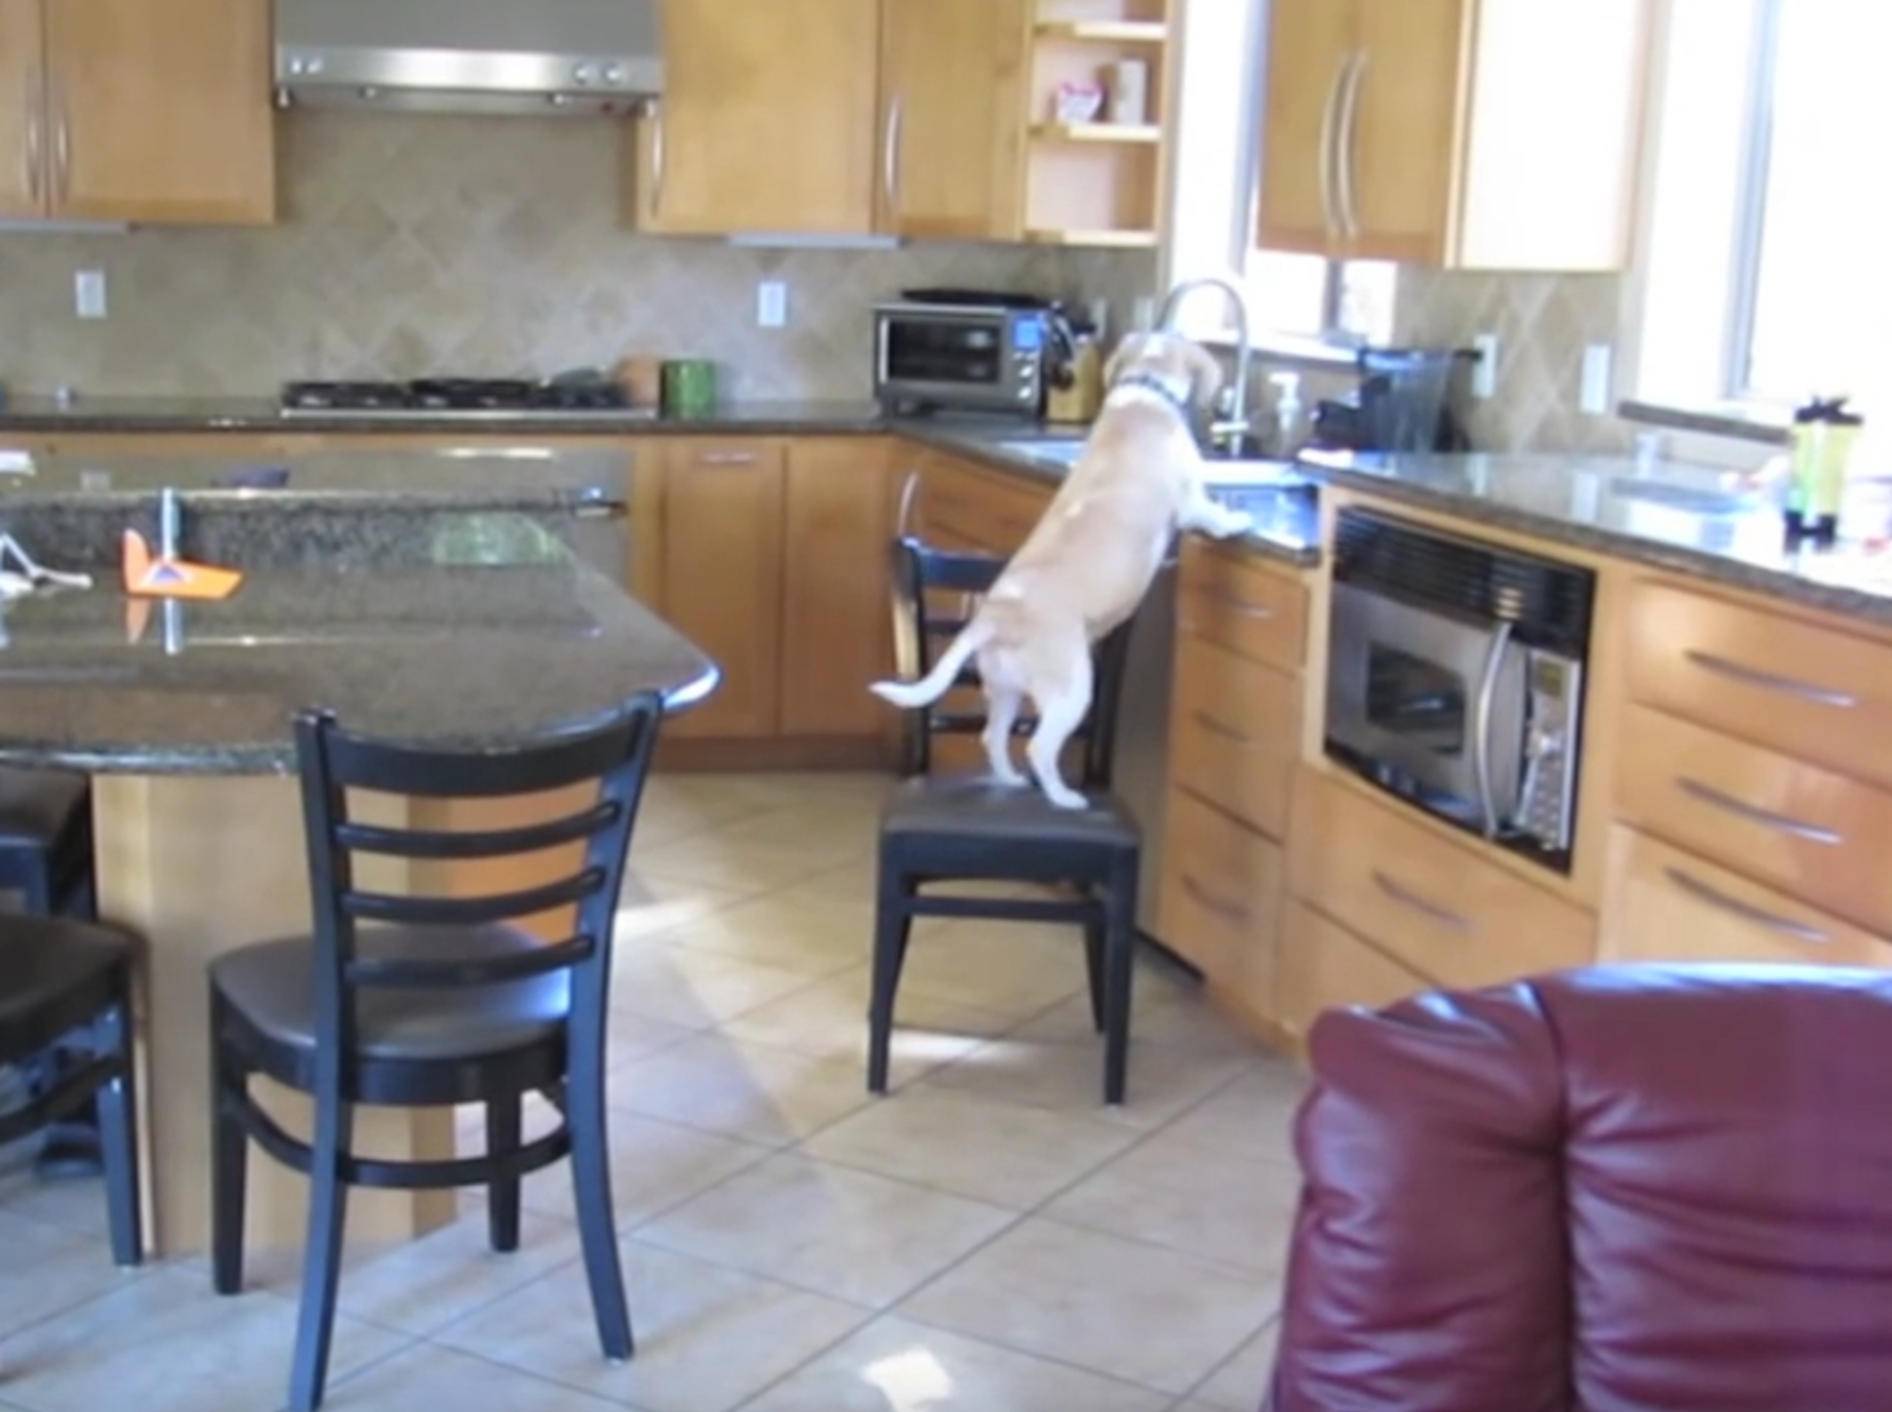 Beagle schnappt sich Chicken Nuggets aus dem Ofen – Bild: YouTube / Rodd Scheinerman